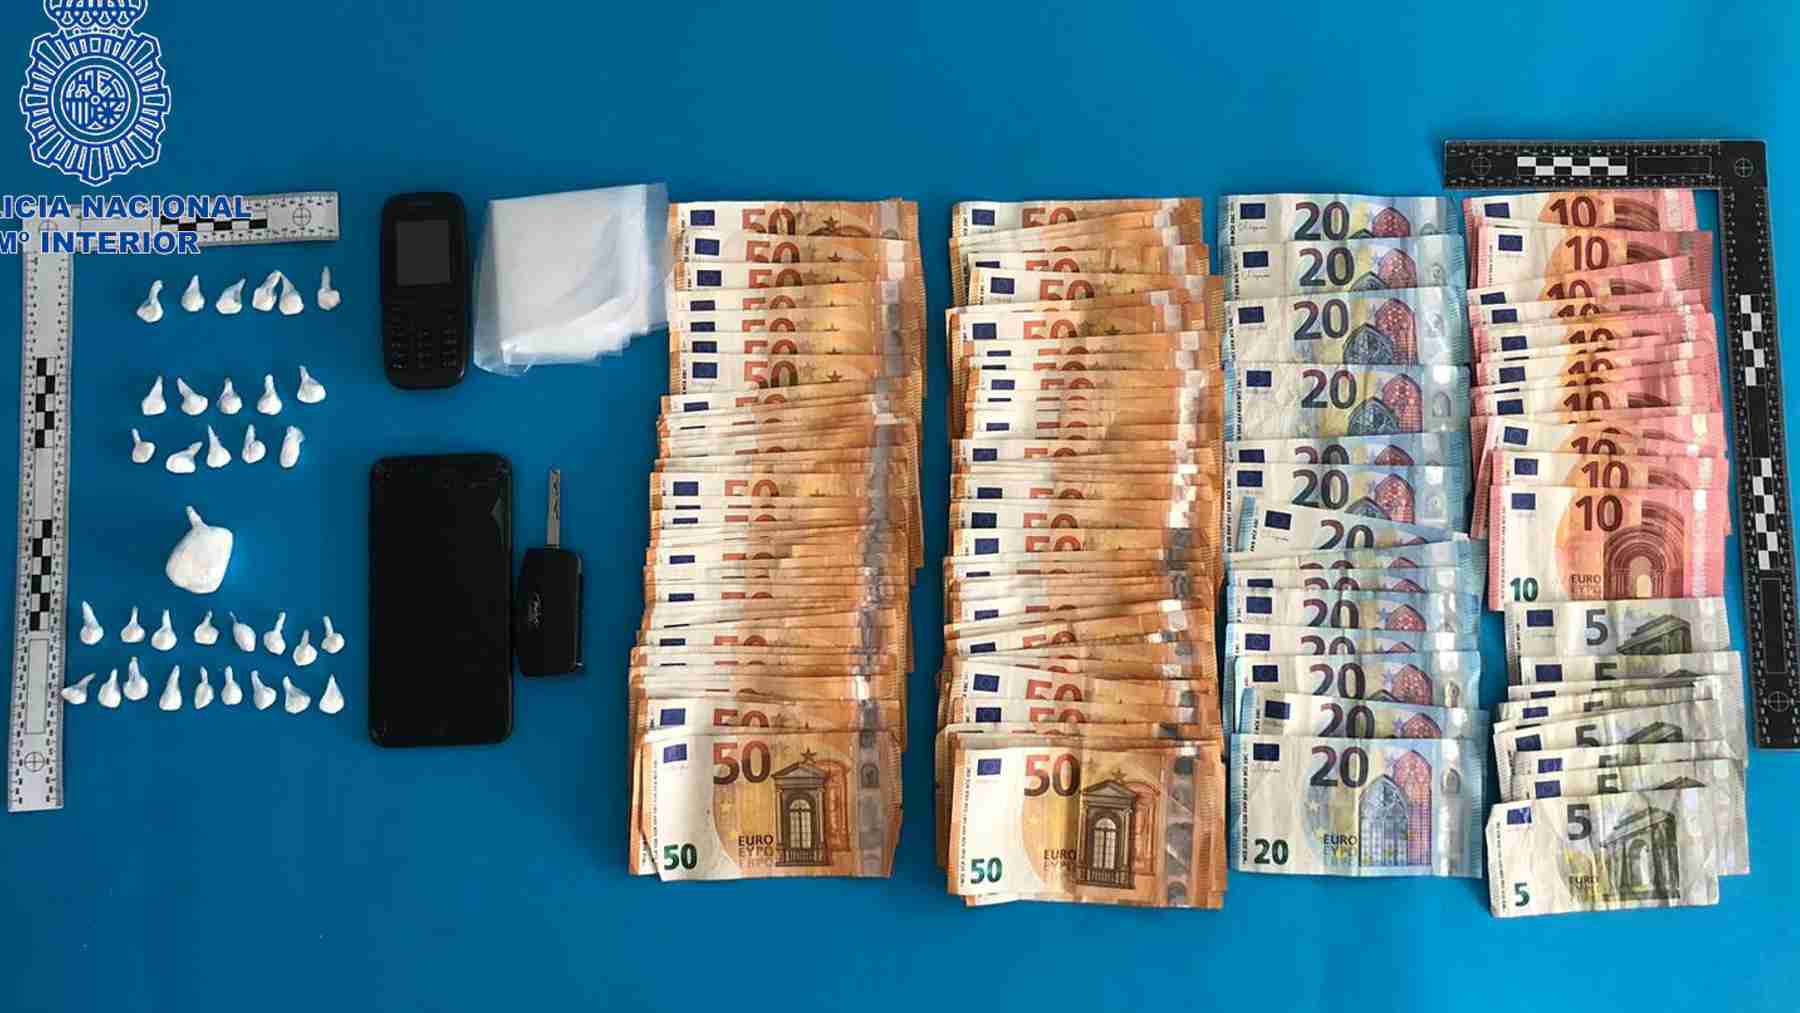 Dosis de cocaína y dinero intervenido por la Policía en la operación. POLICÍA NACIONAL